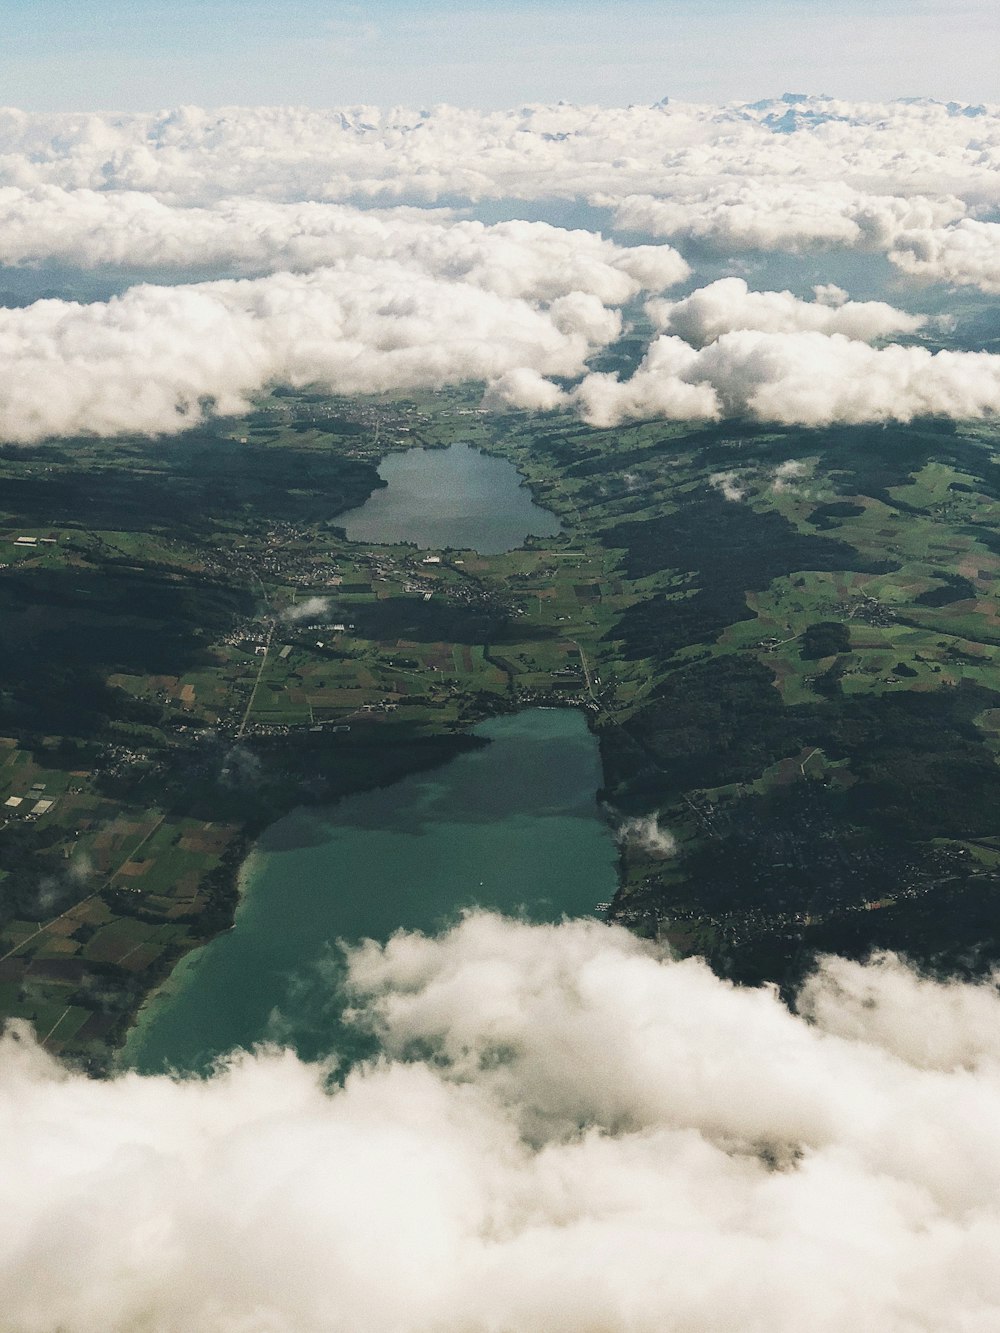 foto aerea di nuvole e specchio d'acqua